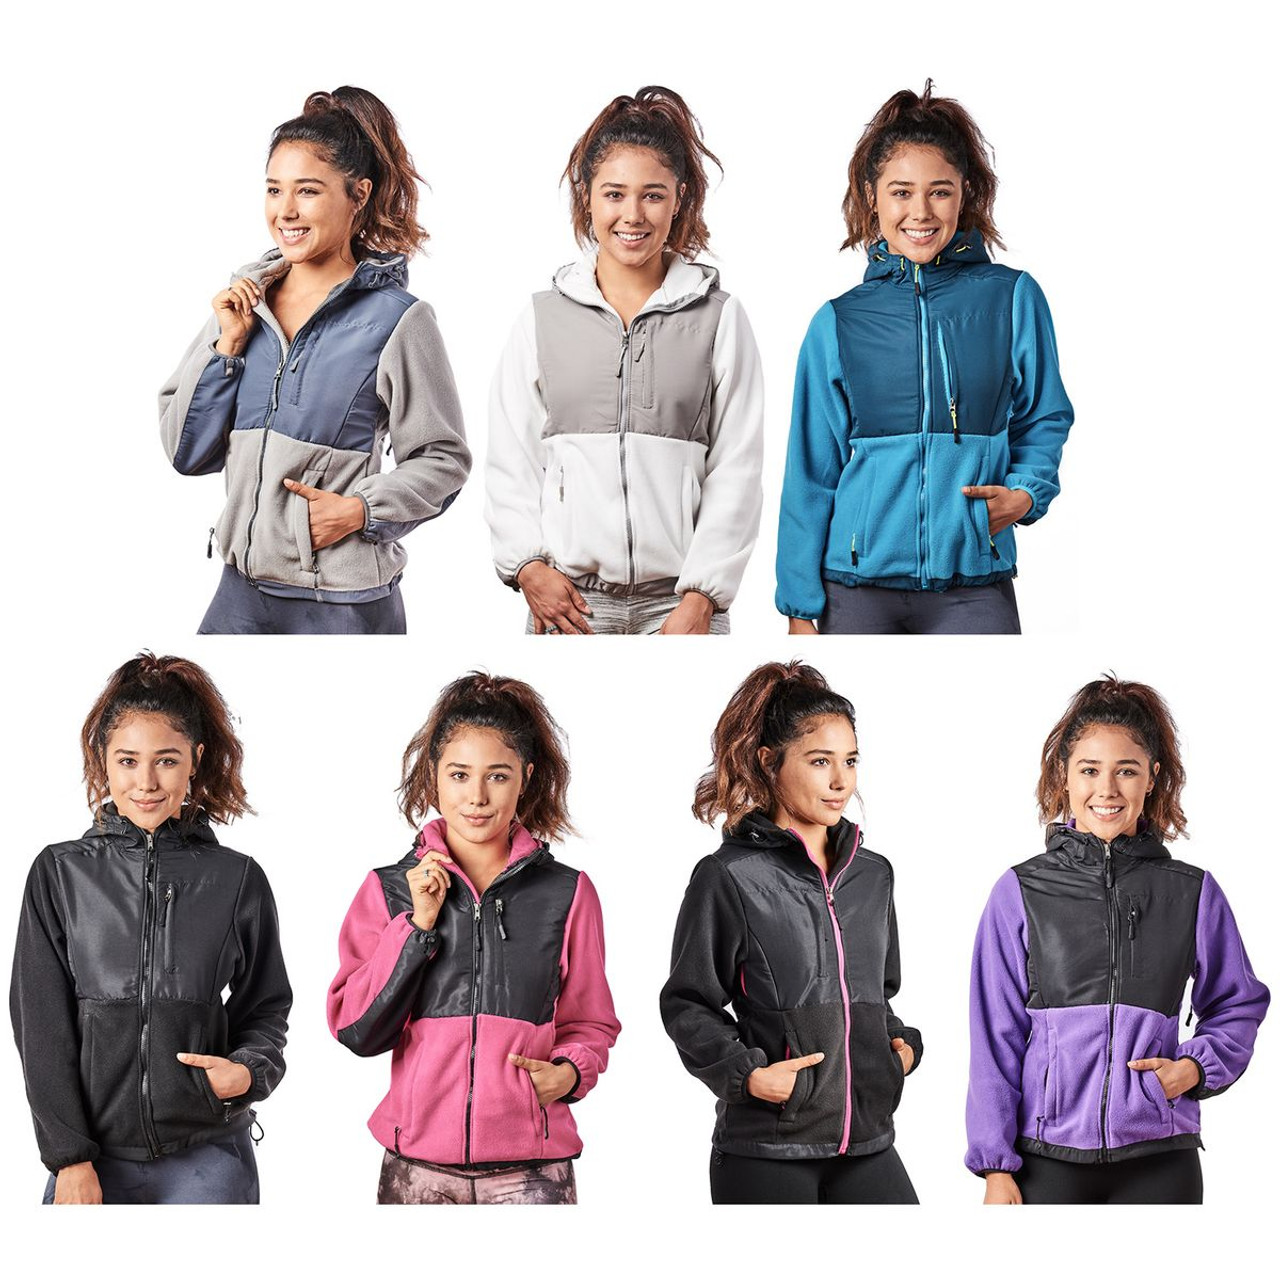 Women’s Two-Tone Full-Zip Fleece Jacket product image